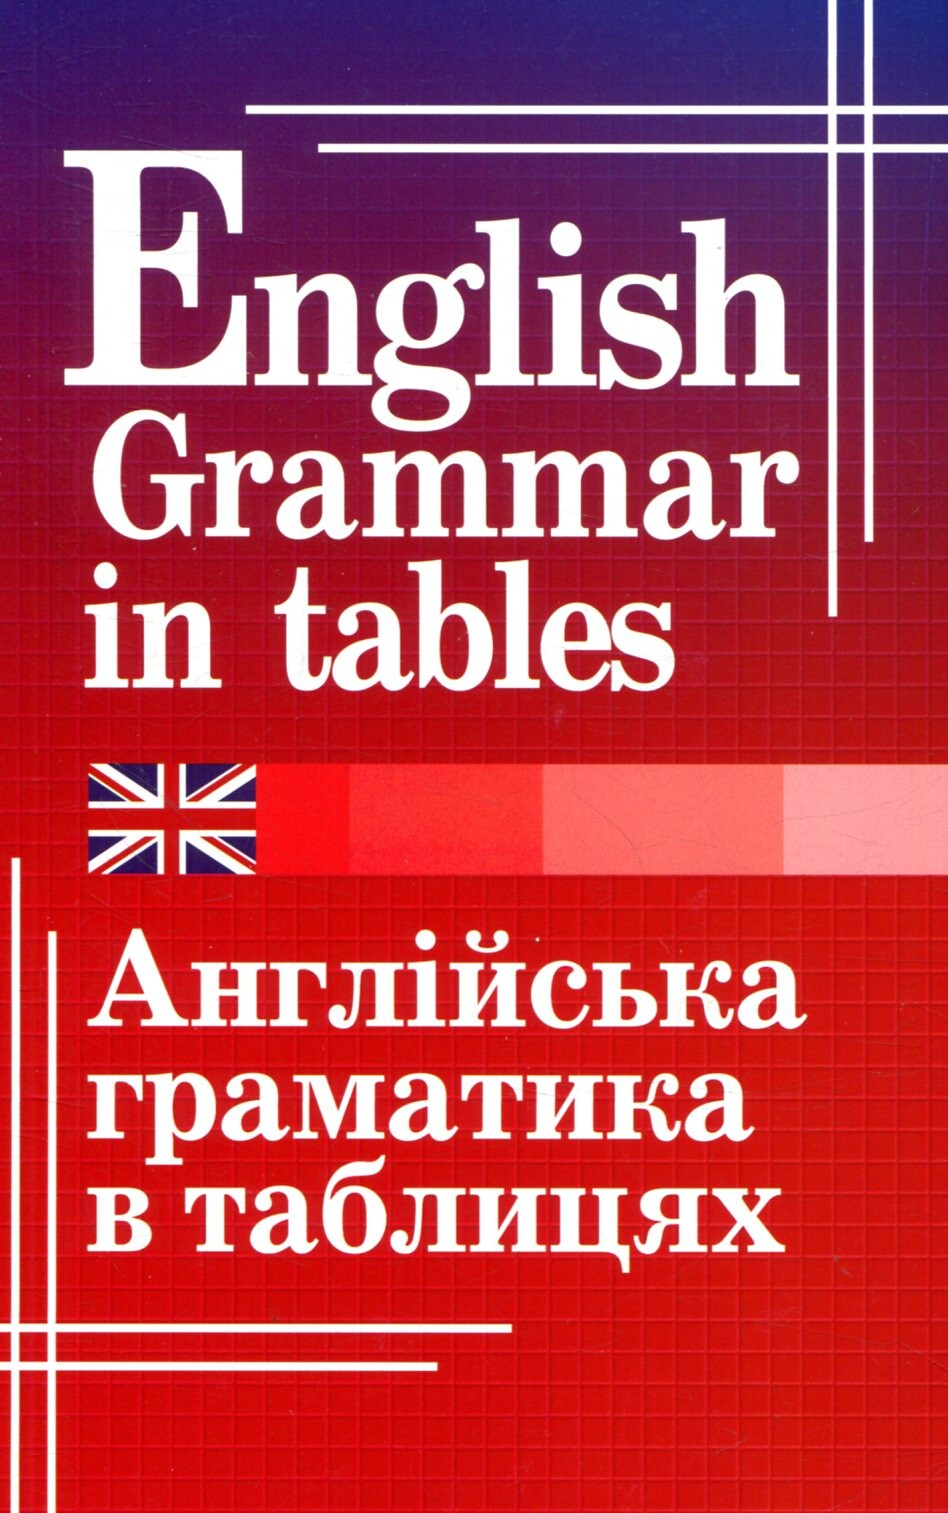 Англійська граматика в таблицях - Vivat